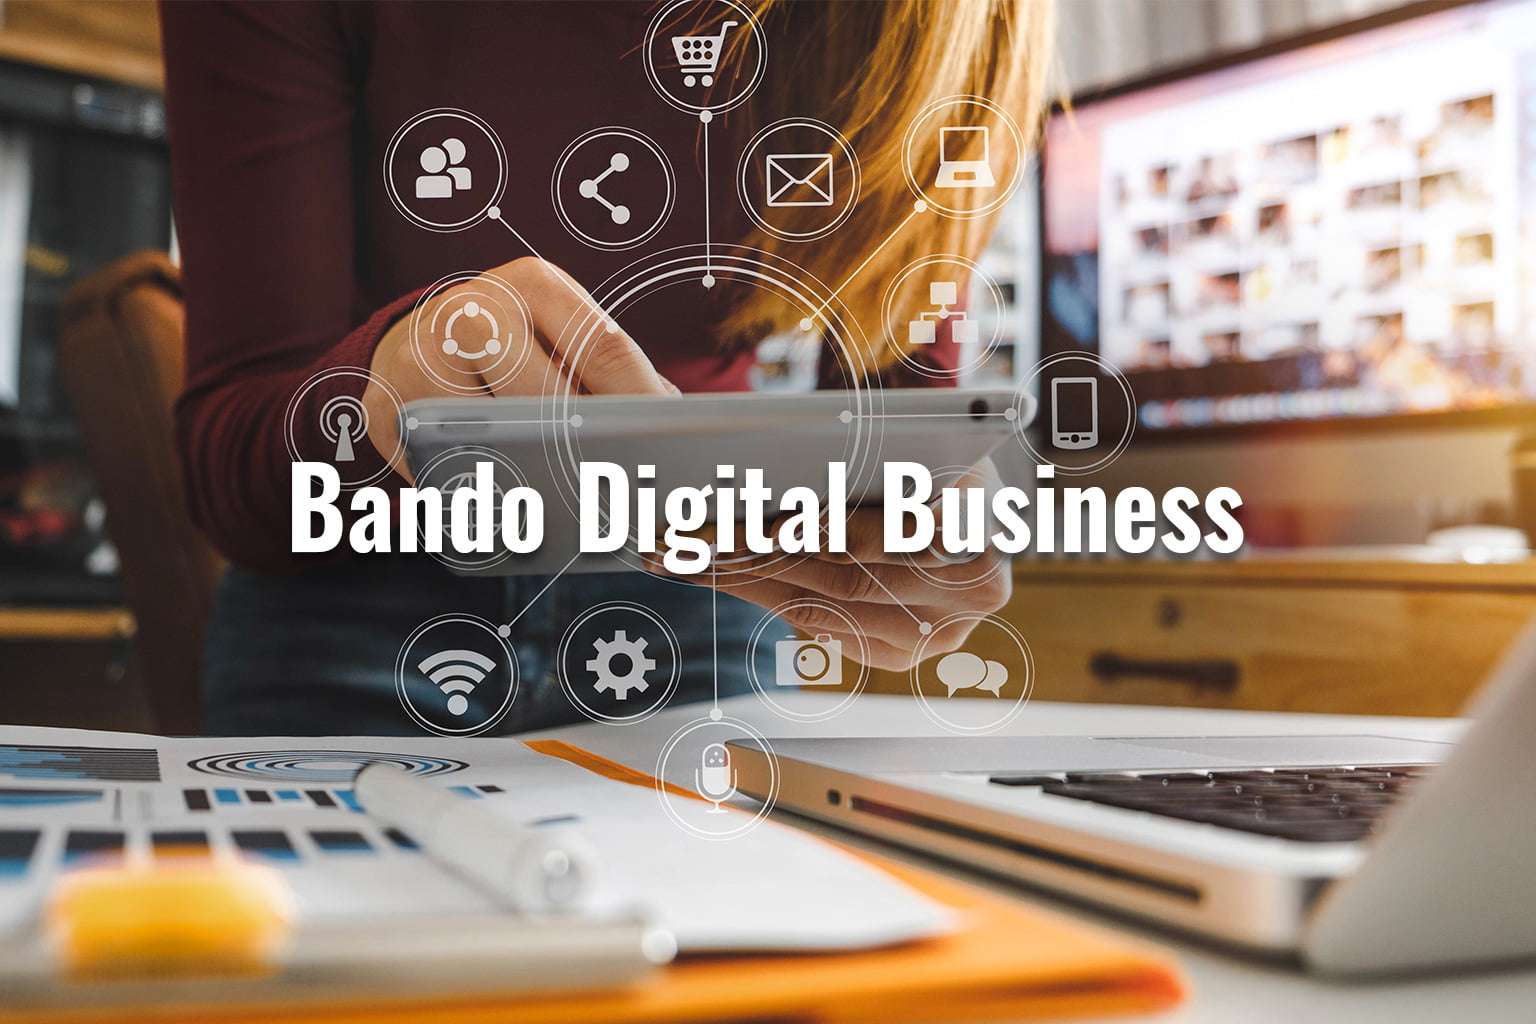 Bando Digital business